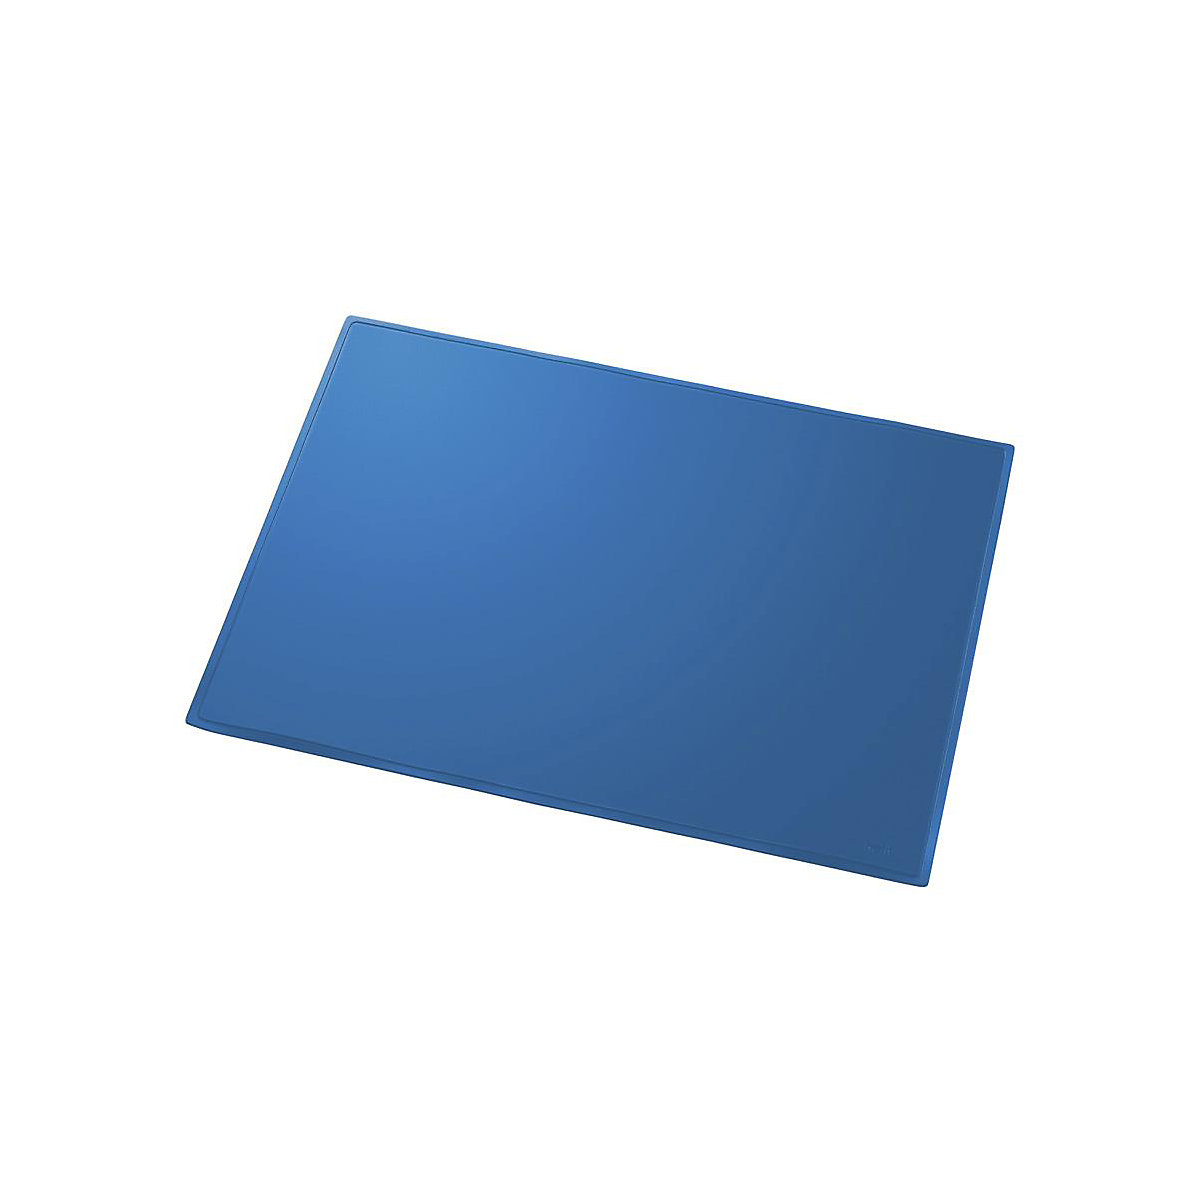 helit – Ecritoire, l x p 630 x 500 mm, lot de 5, bleu, dos en film mousse, relevable